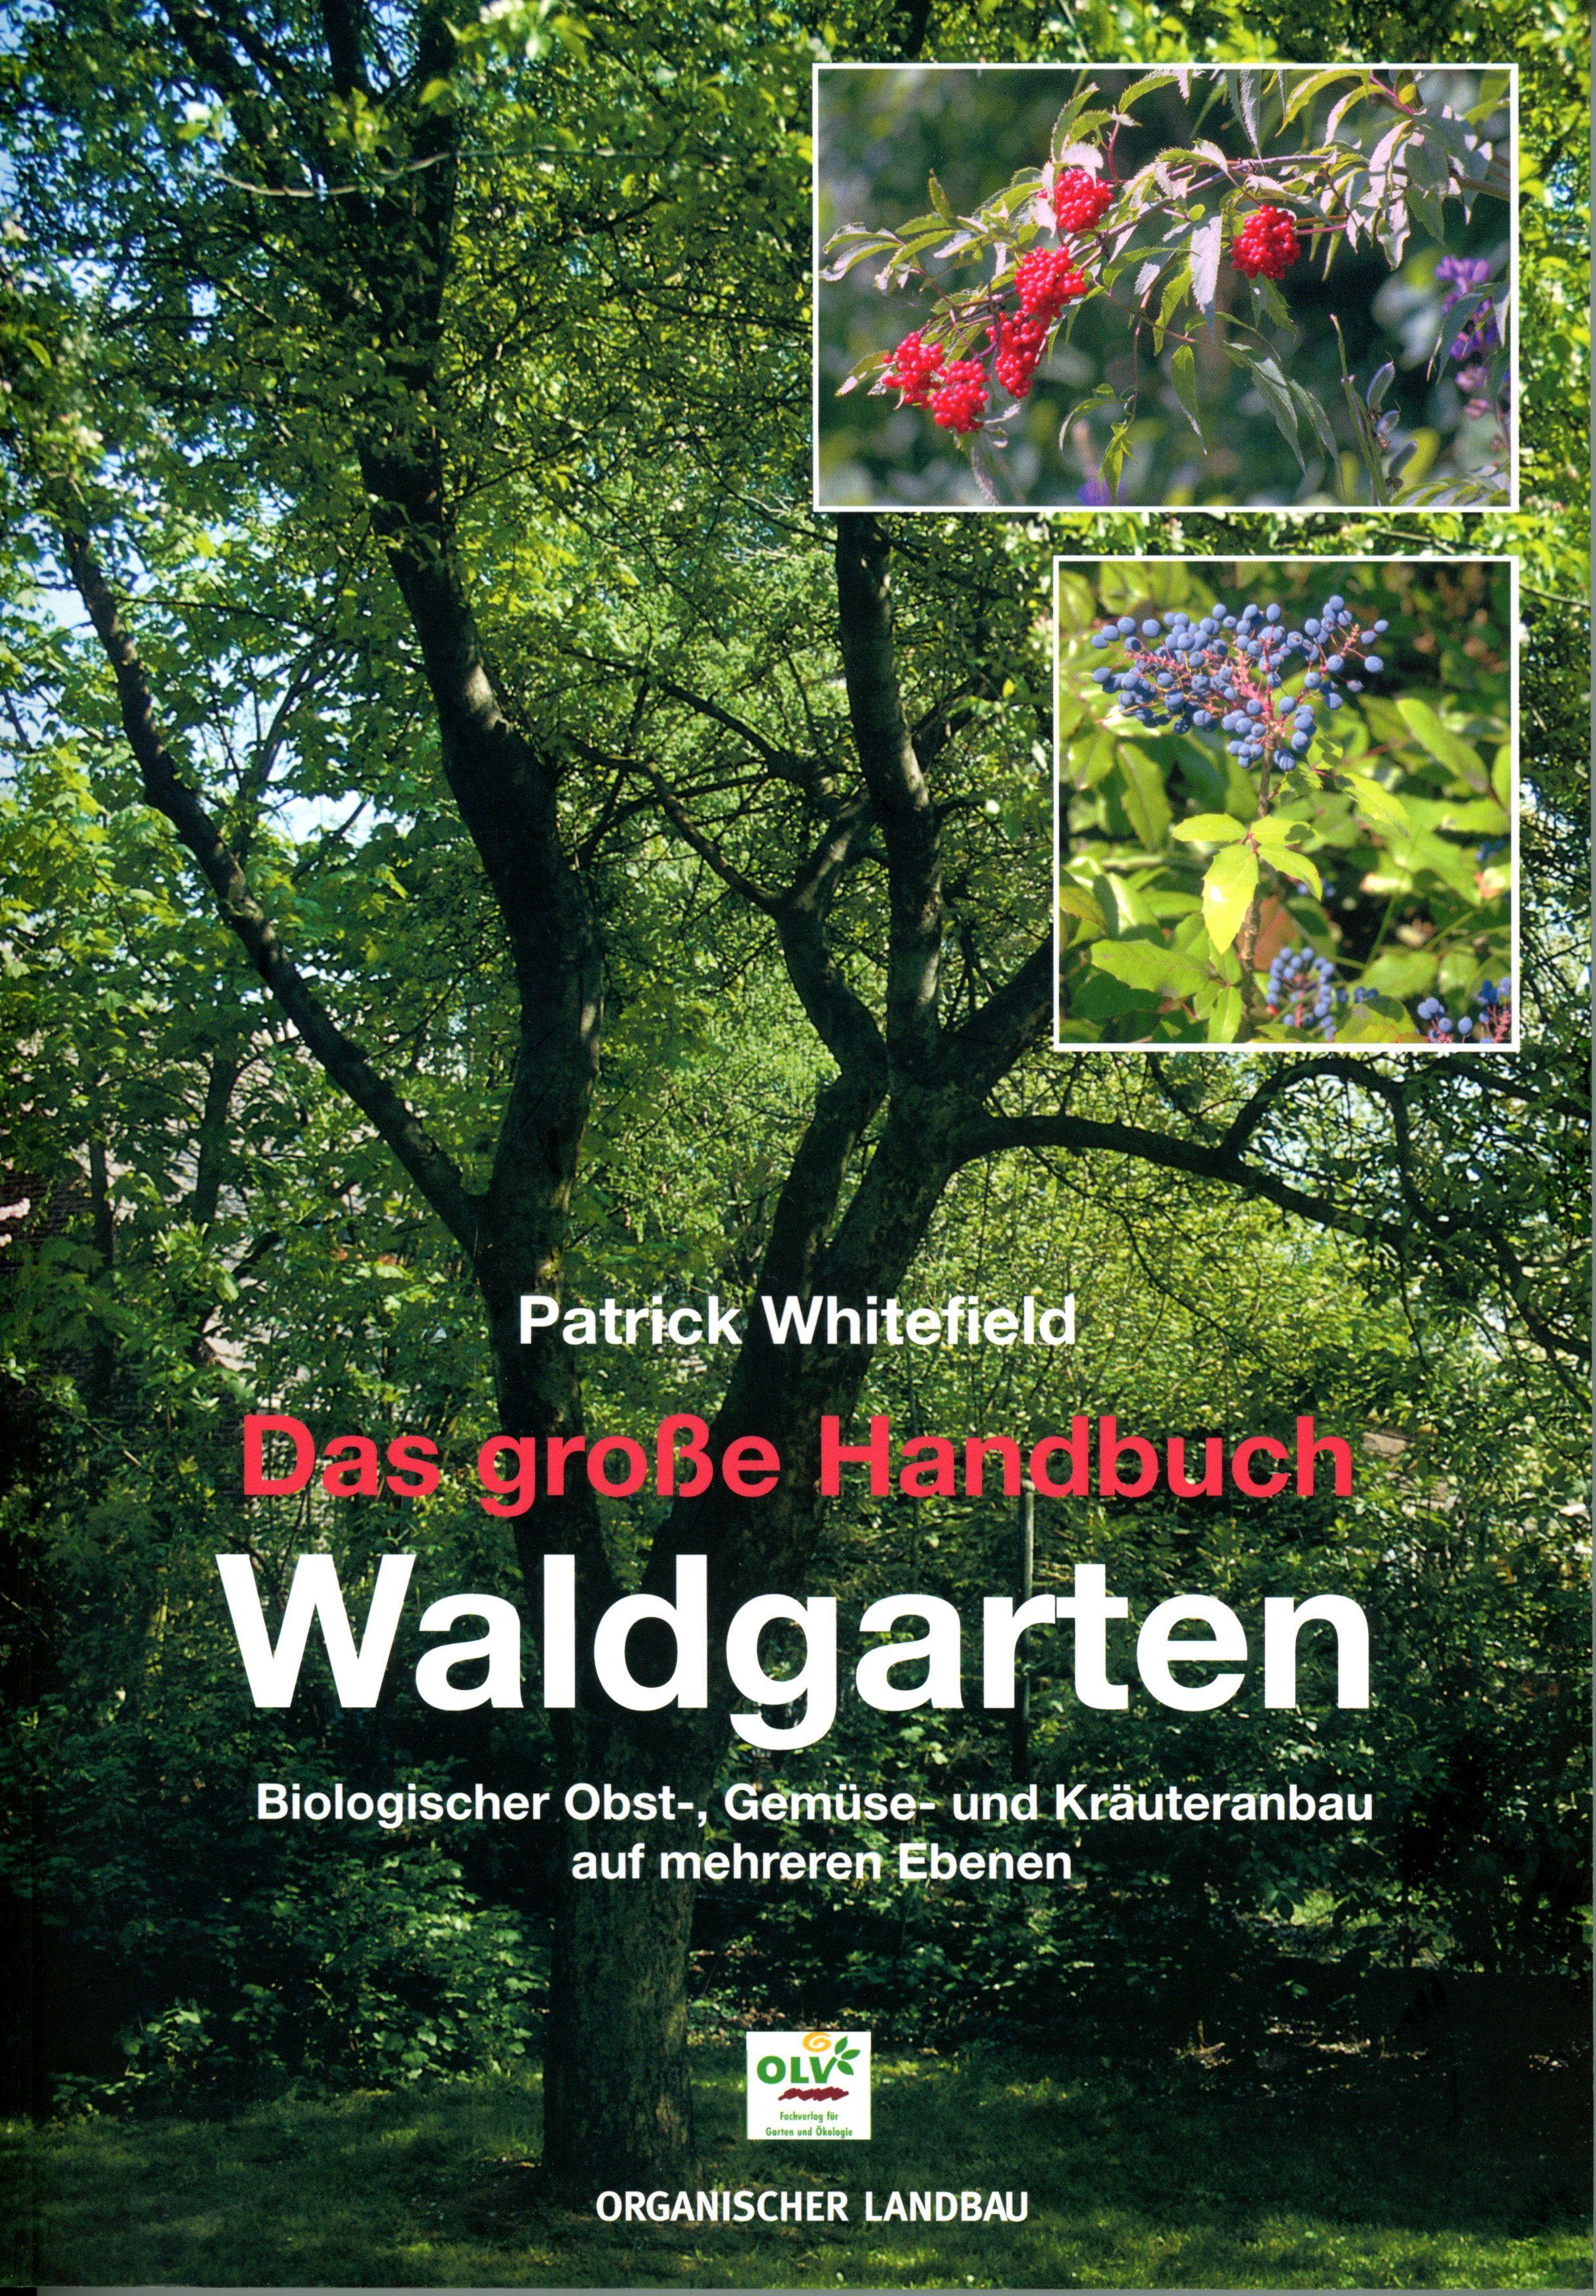 Das große Handbuch Waldgarten Permakultur, biologischer Obst-, Gemüse- und Kräuteranbau auf mehreren Ebenen